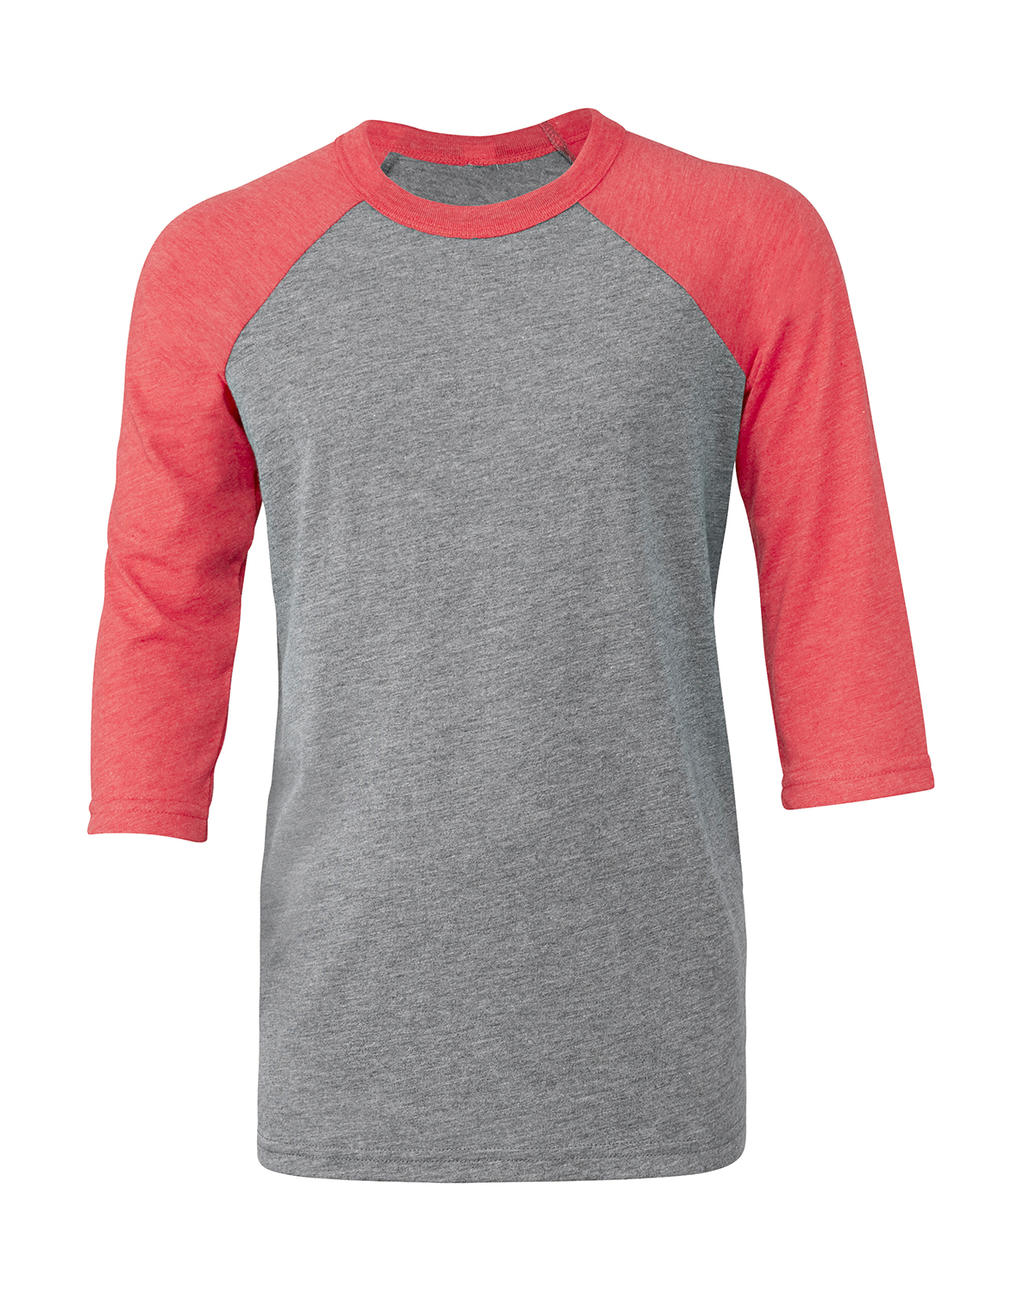 Detské tričko s baseballovými 3/4 rukávmi - grey/red triblend